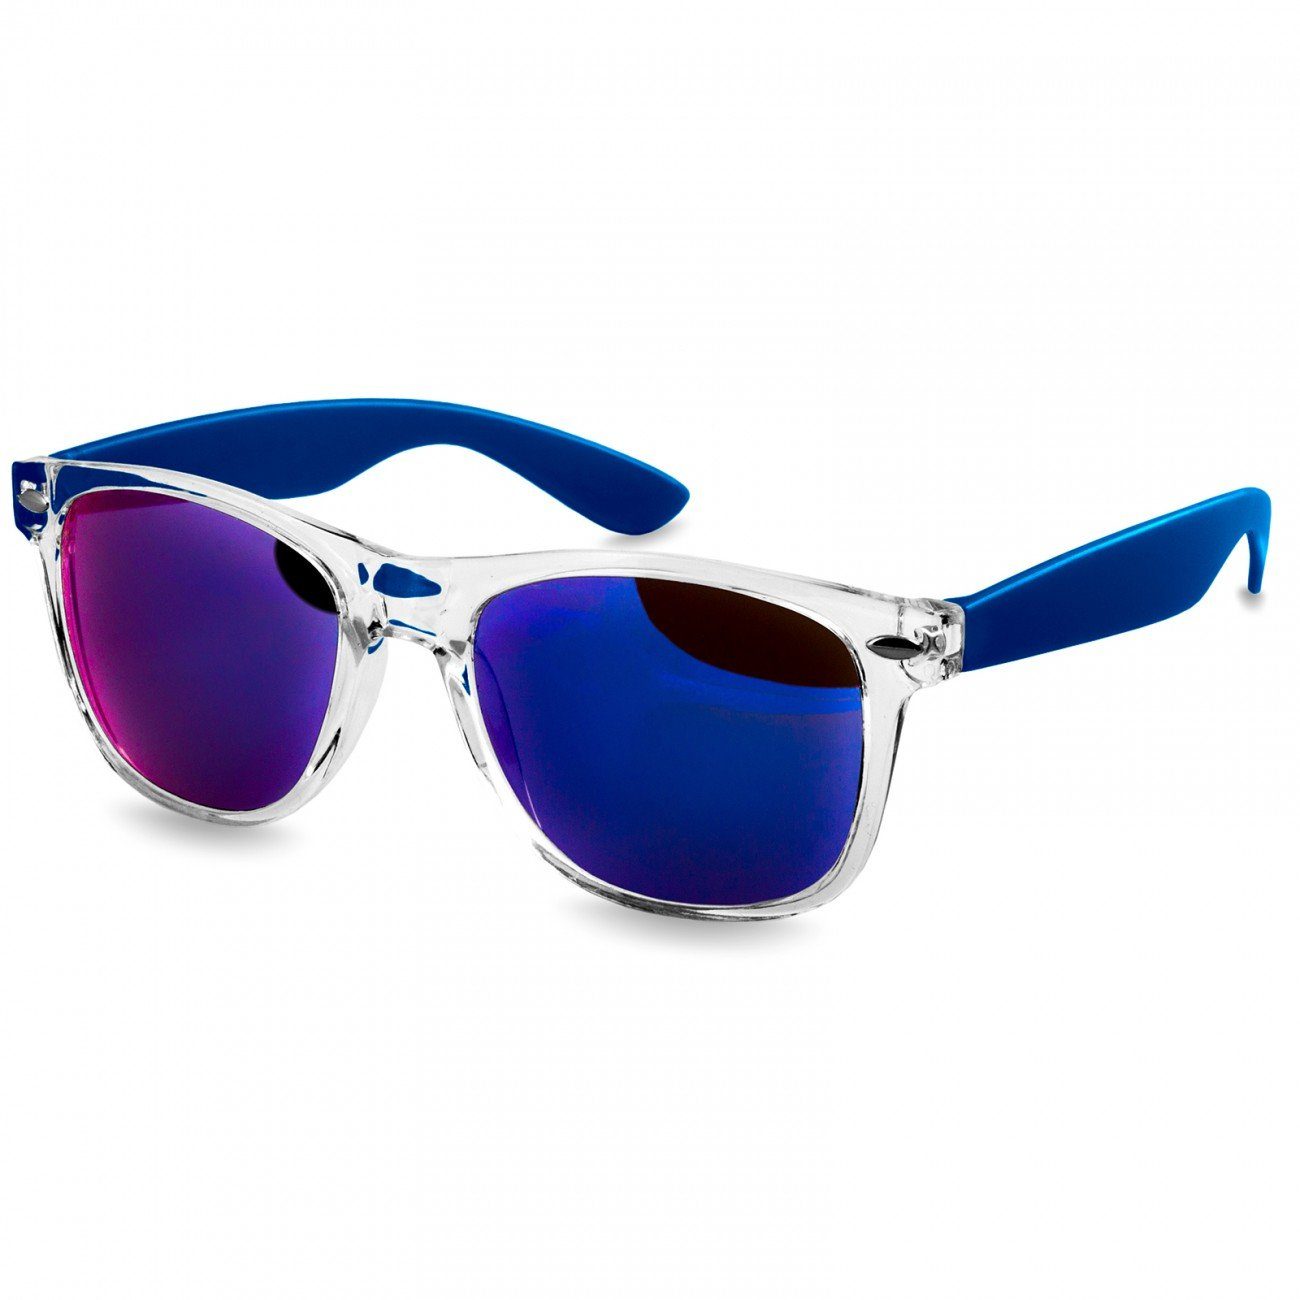 SG017 Caspar RETRO blau Sonnenbrille Damen blau Designbrille verspiegelt /